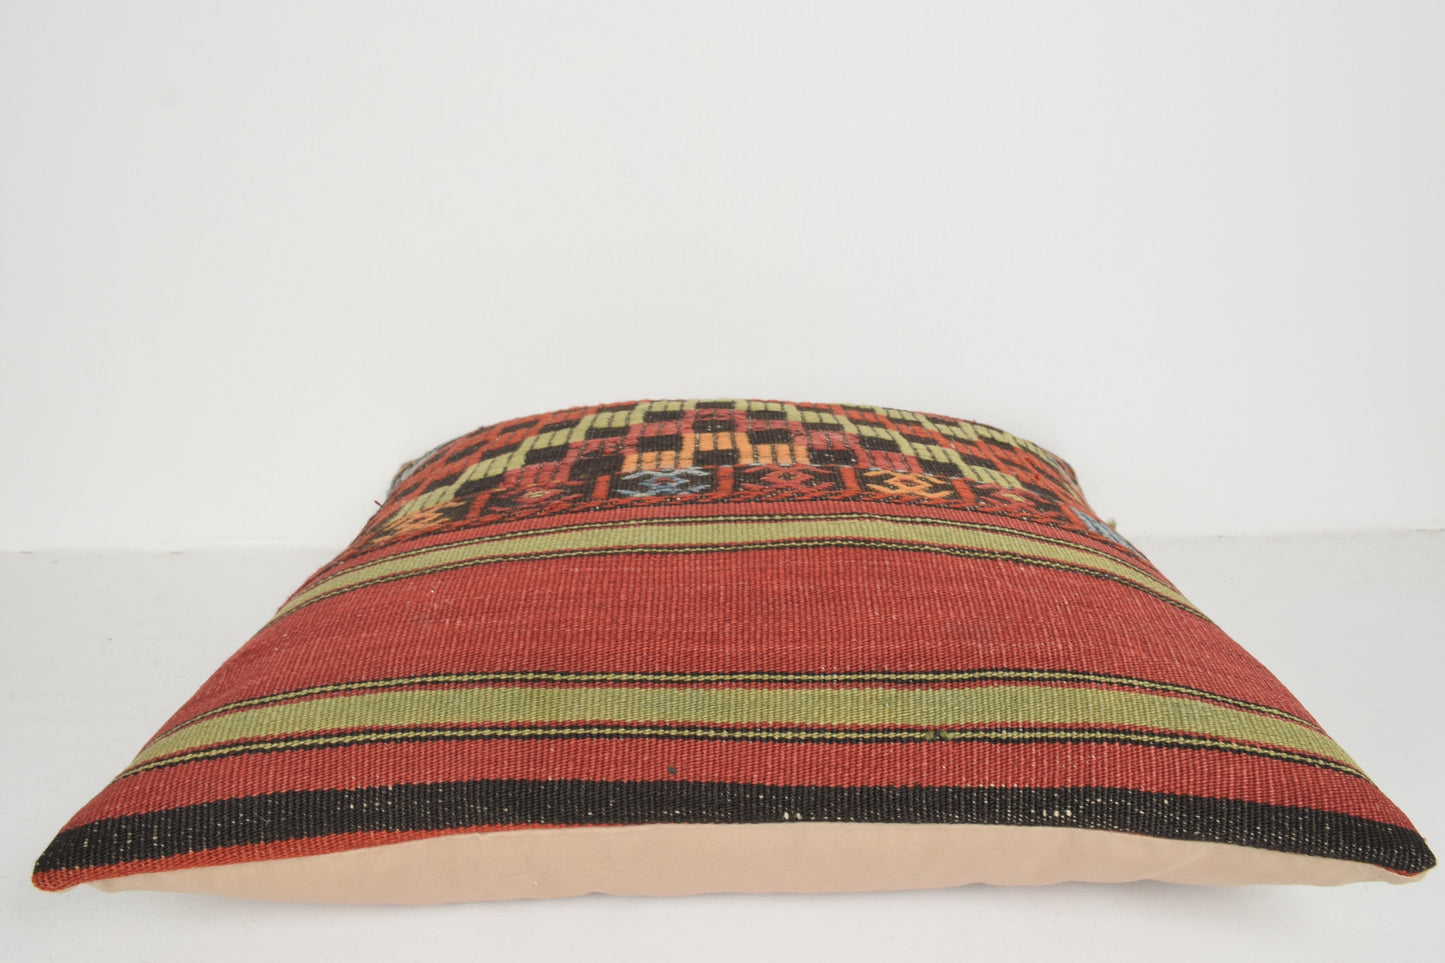 Geometric Kilim Cushion A00721 Christmas cushions African pillowcase 24x24